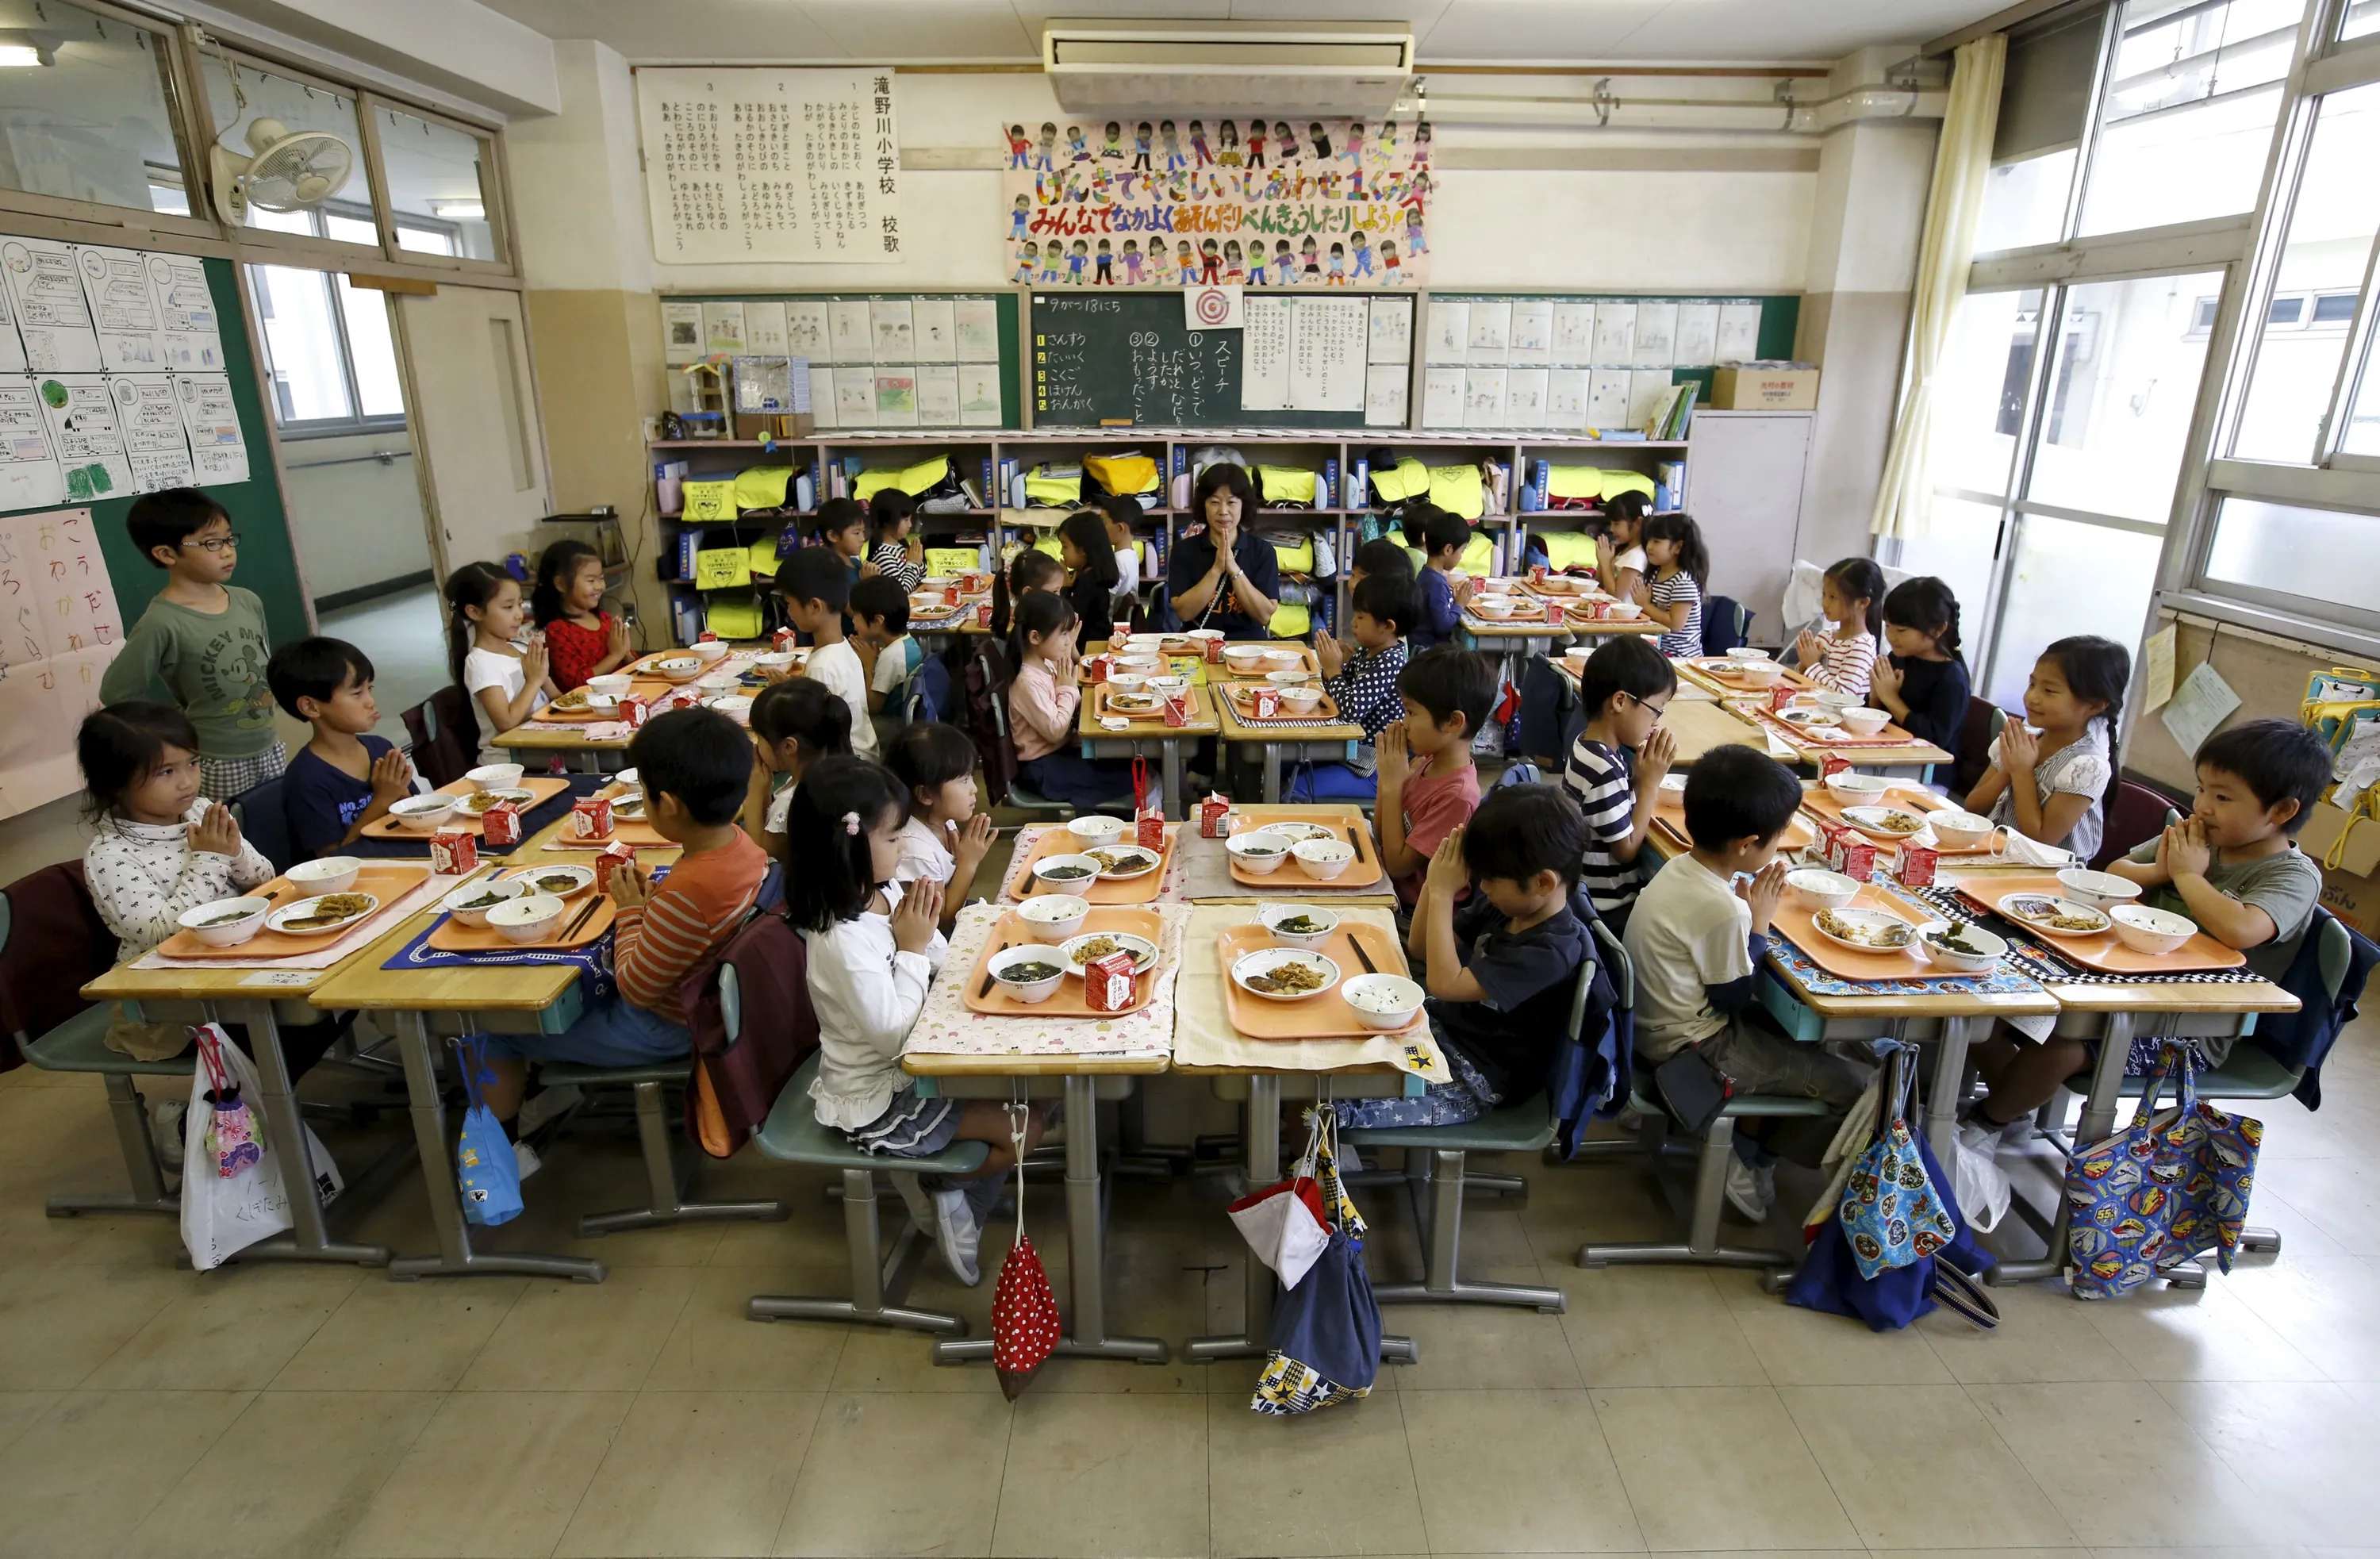 Japan teen school. Школа в Японии начальная школа. Школа Сасебо Япония. Япония школа столовая. Столовые в японских школах.